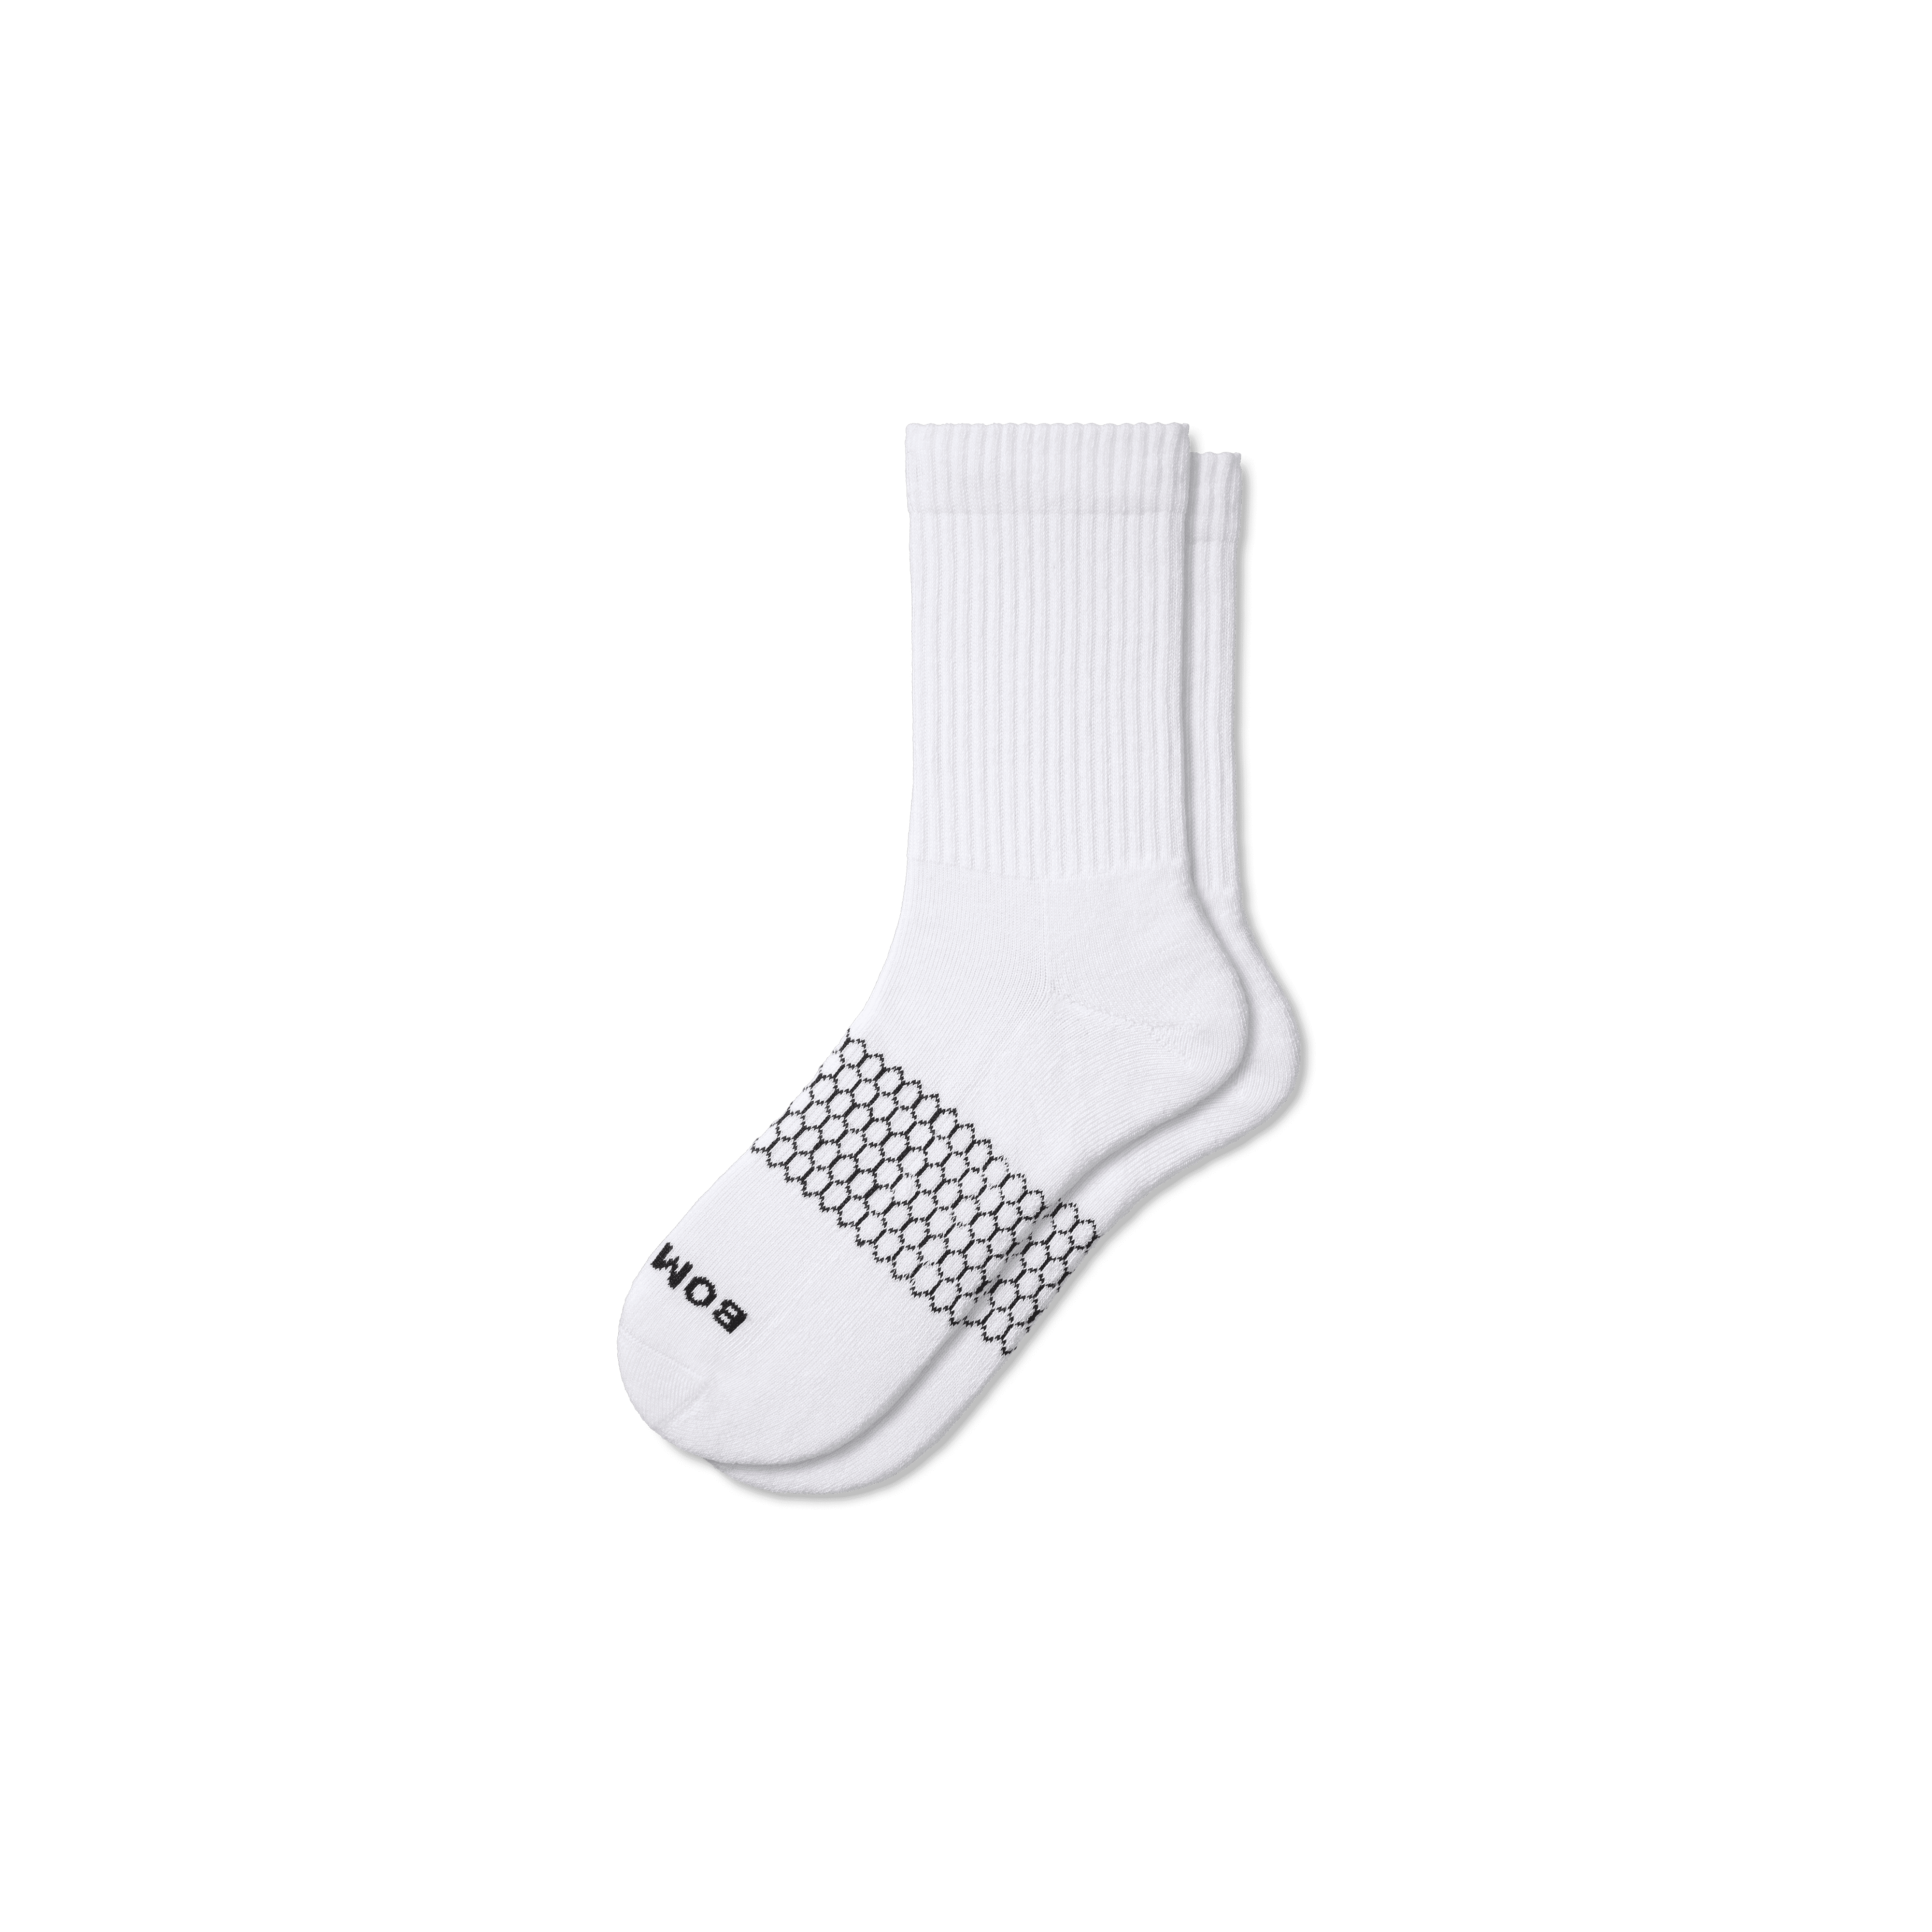 Bombas Solids Half Calf Socks In White